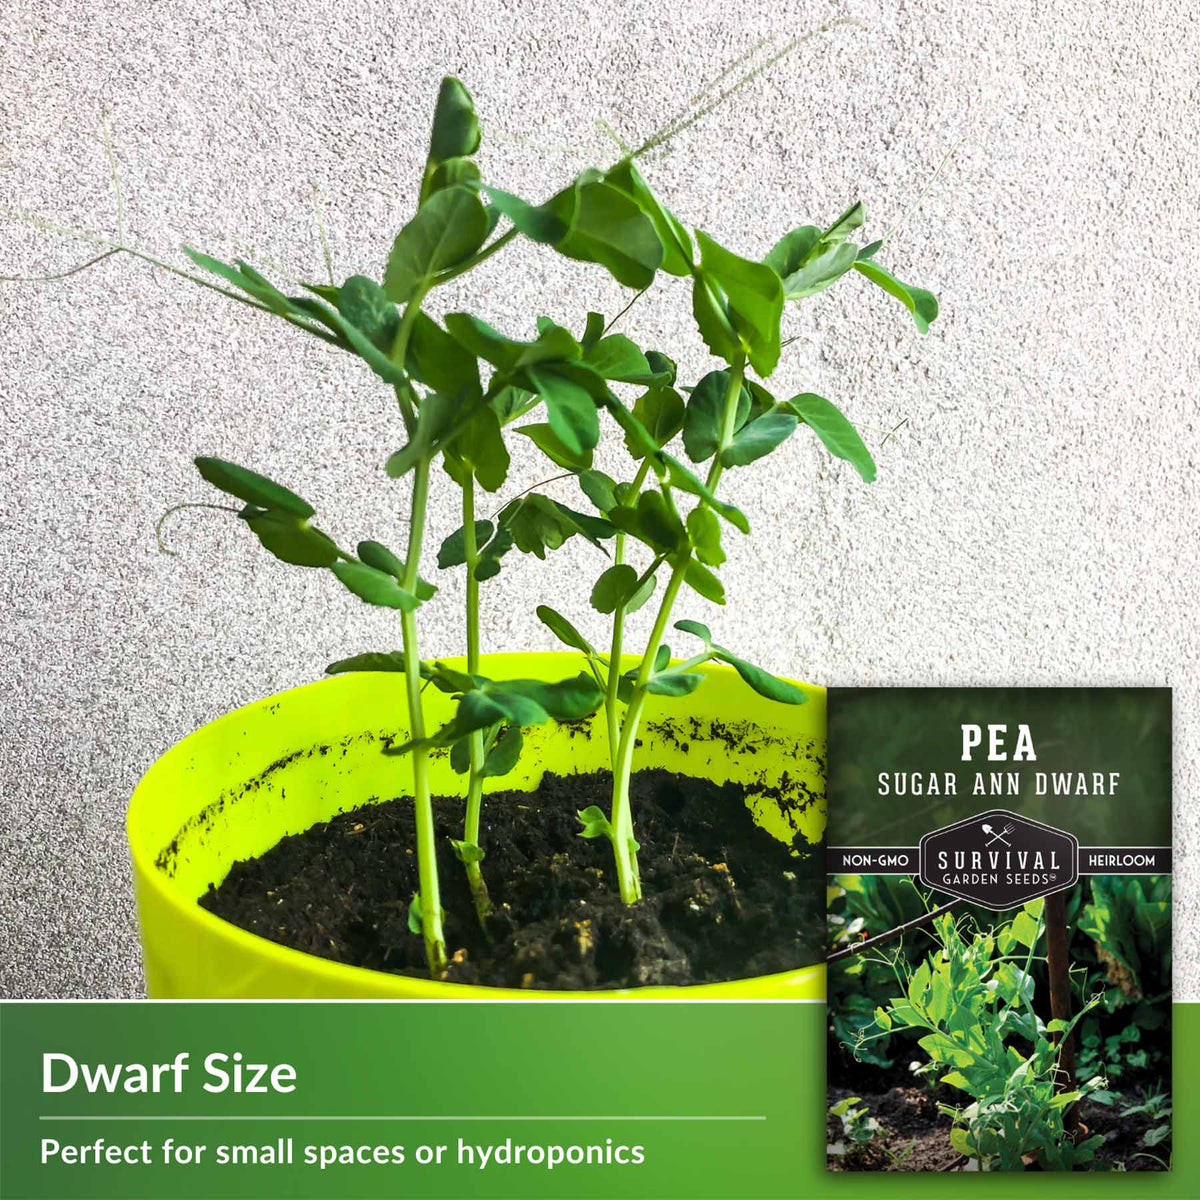 Dwarf Size peas